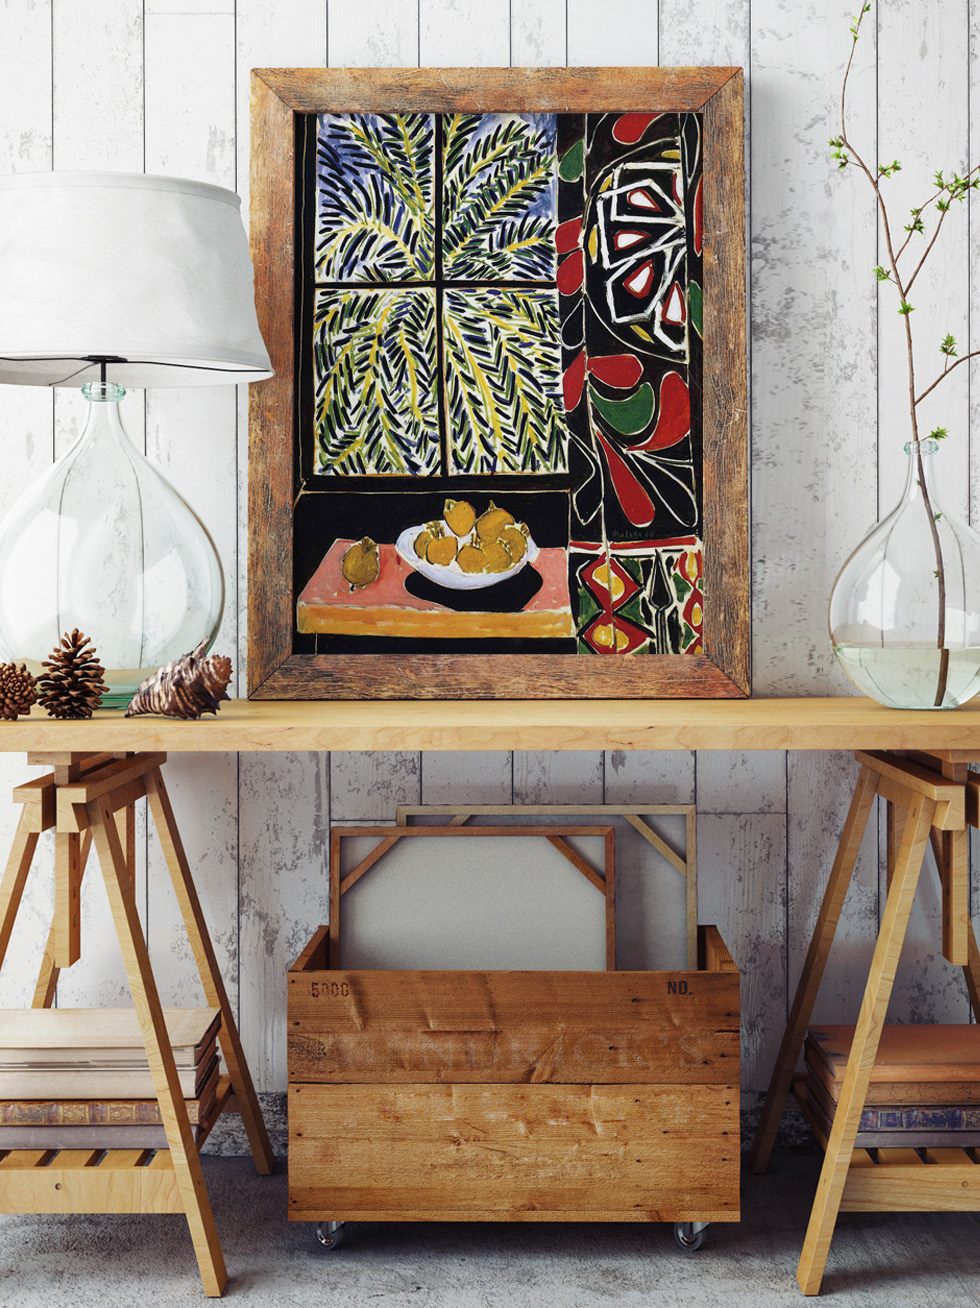 Matisse, Intérieur Avec Rideaux Egyptiens dans une pièce